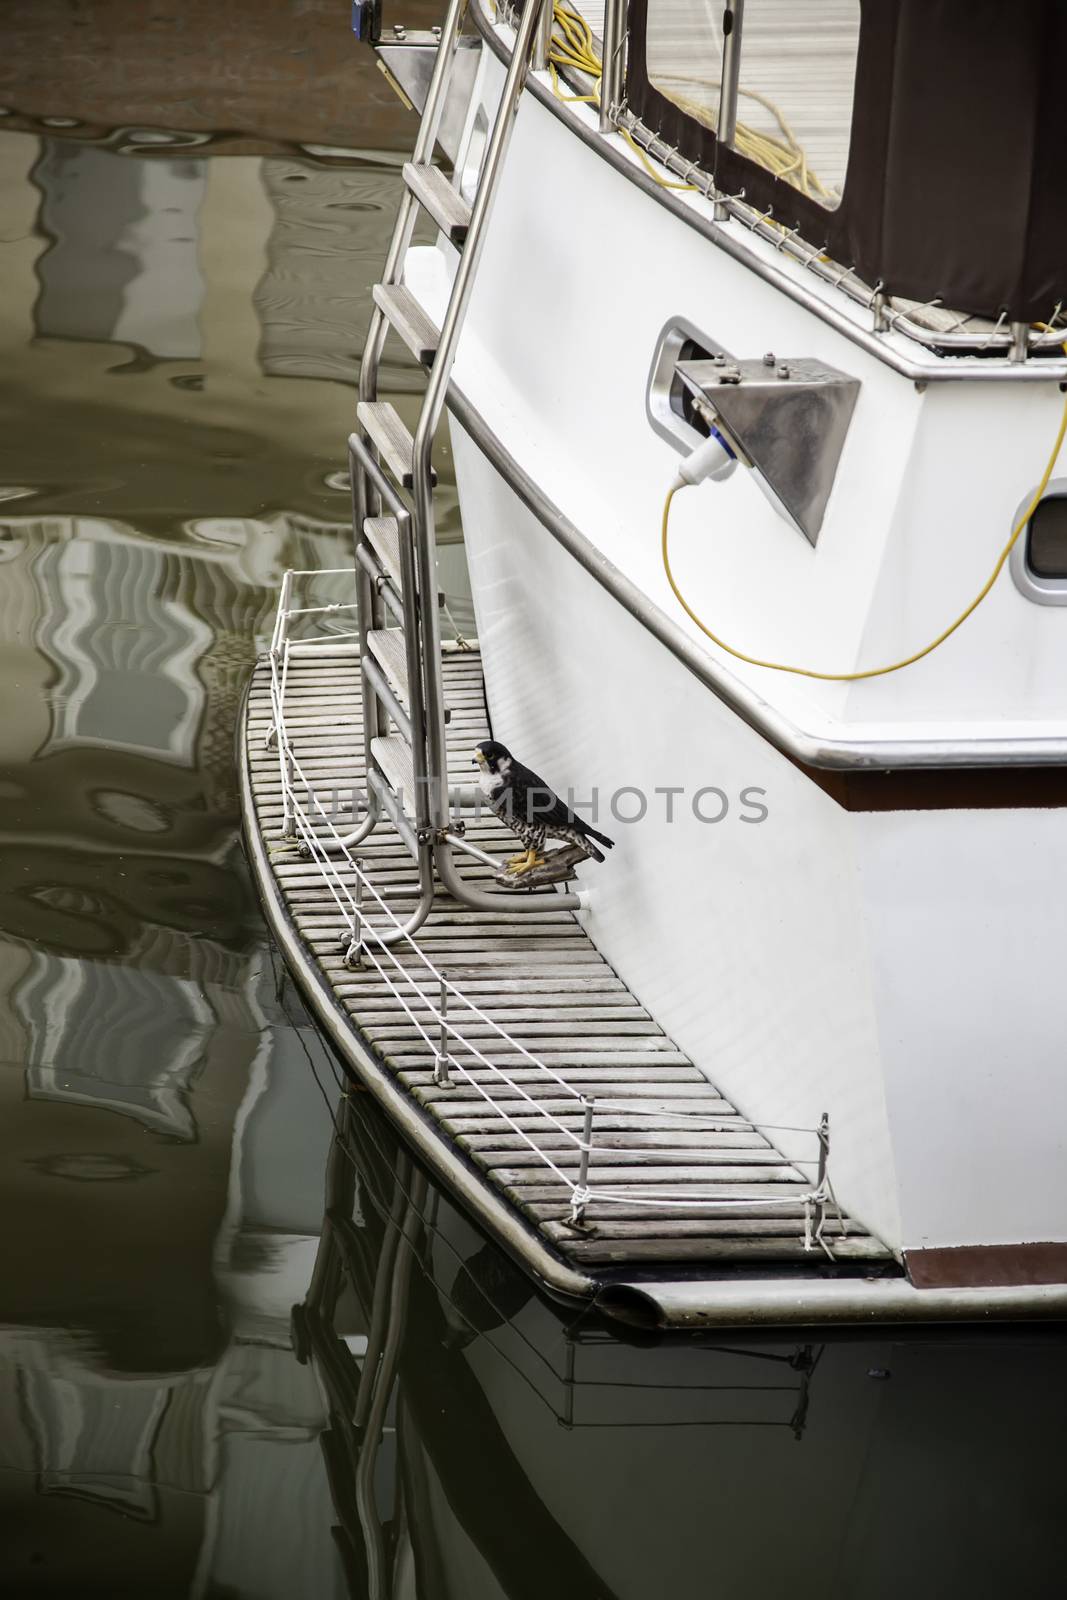 Hawk on a boat ride by esebene